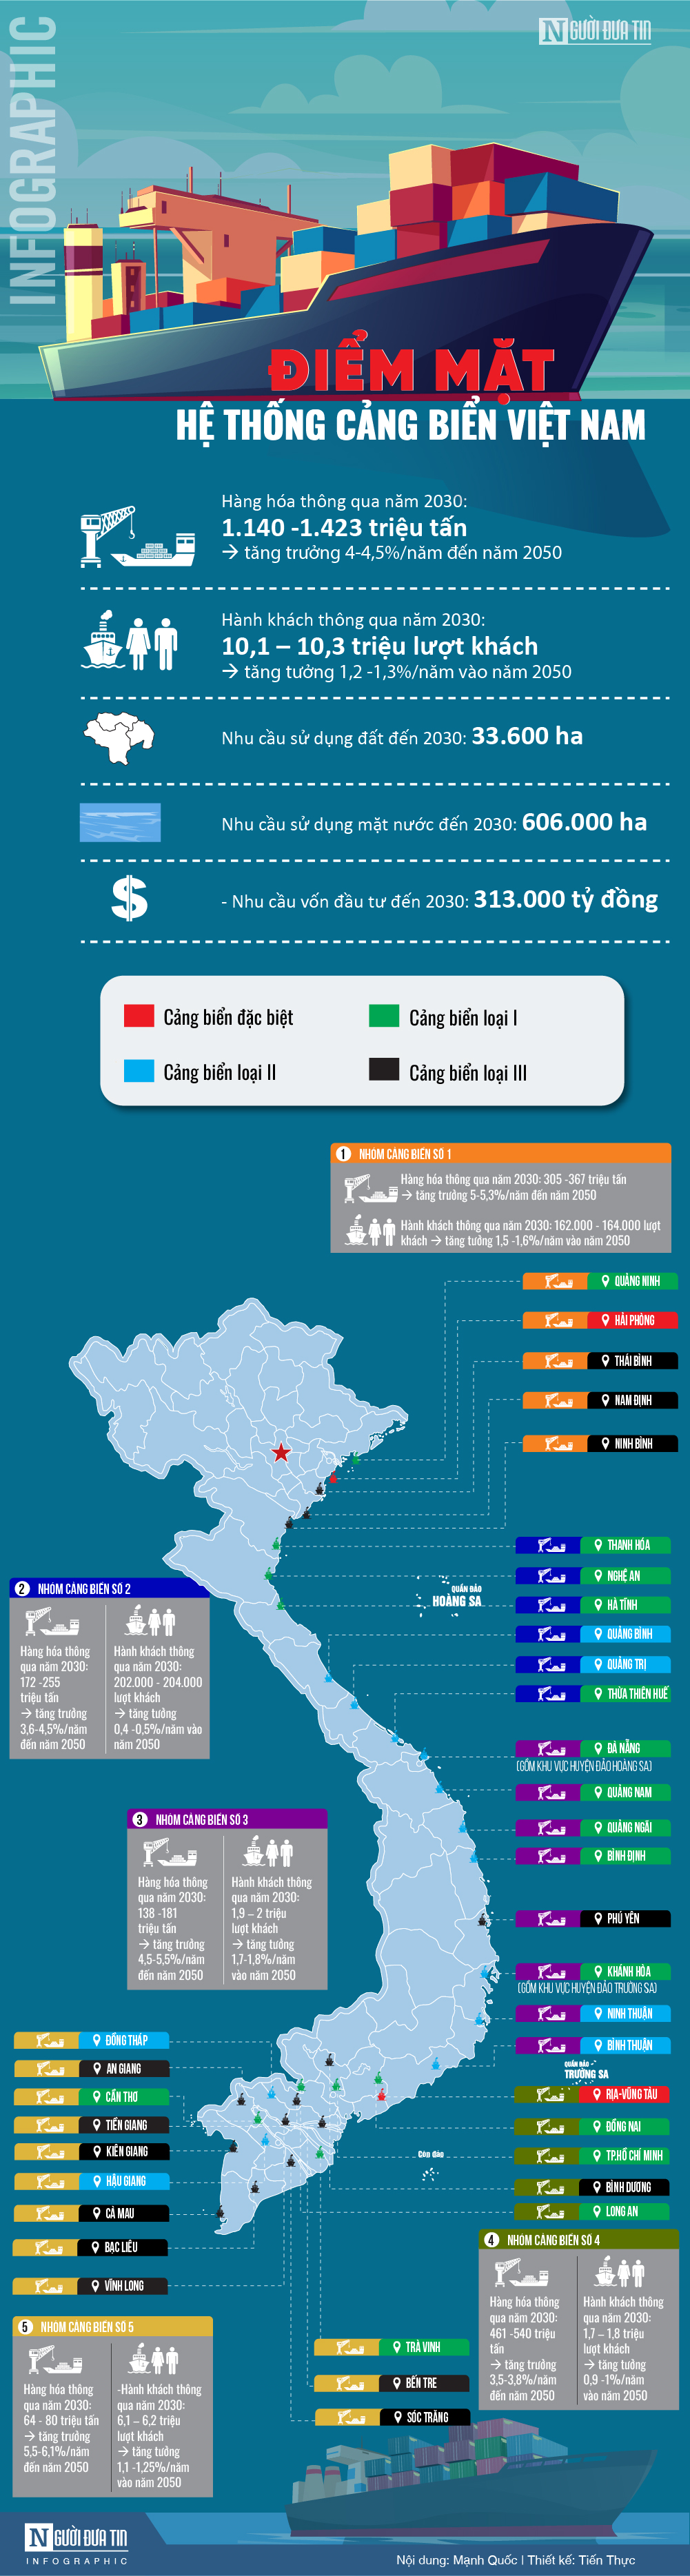 Infocus - [Info] Điểm mặt hệ thống cảng biển Việt Nam